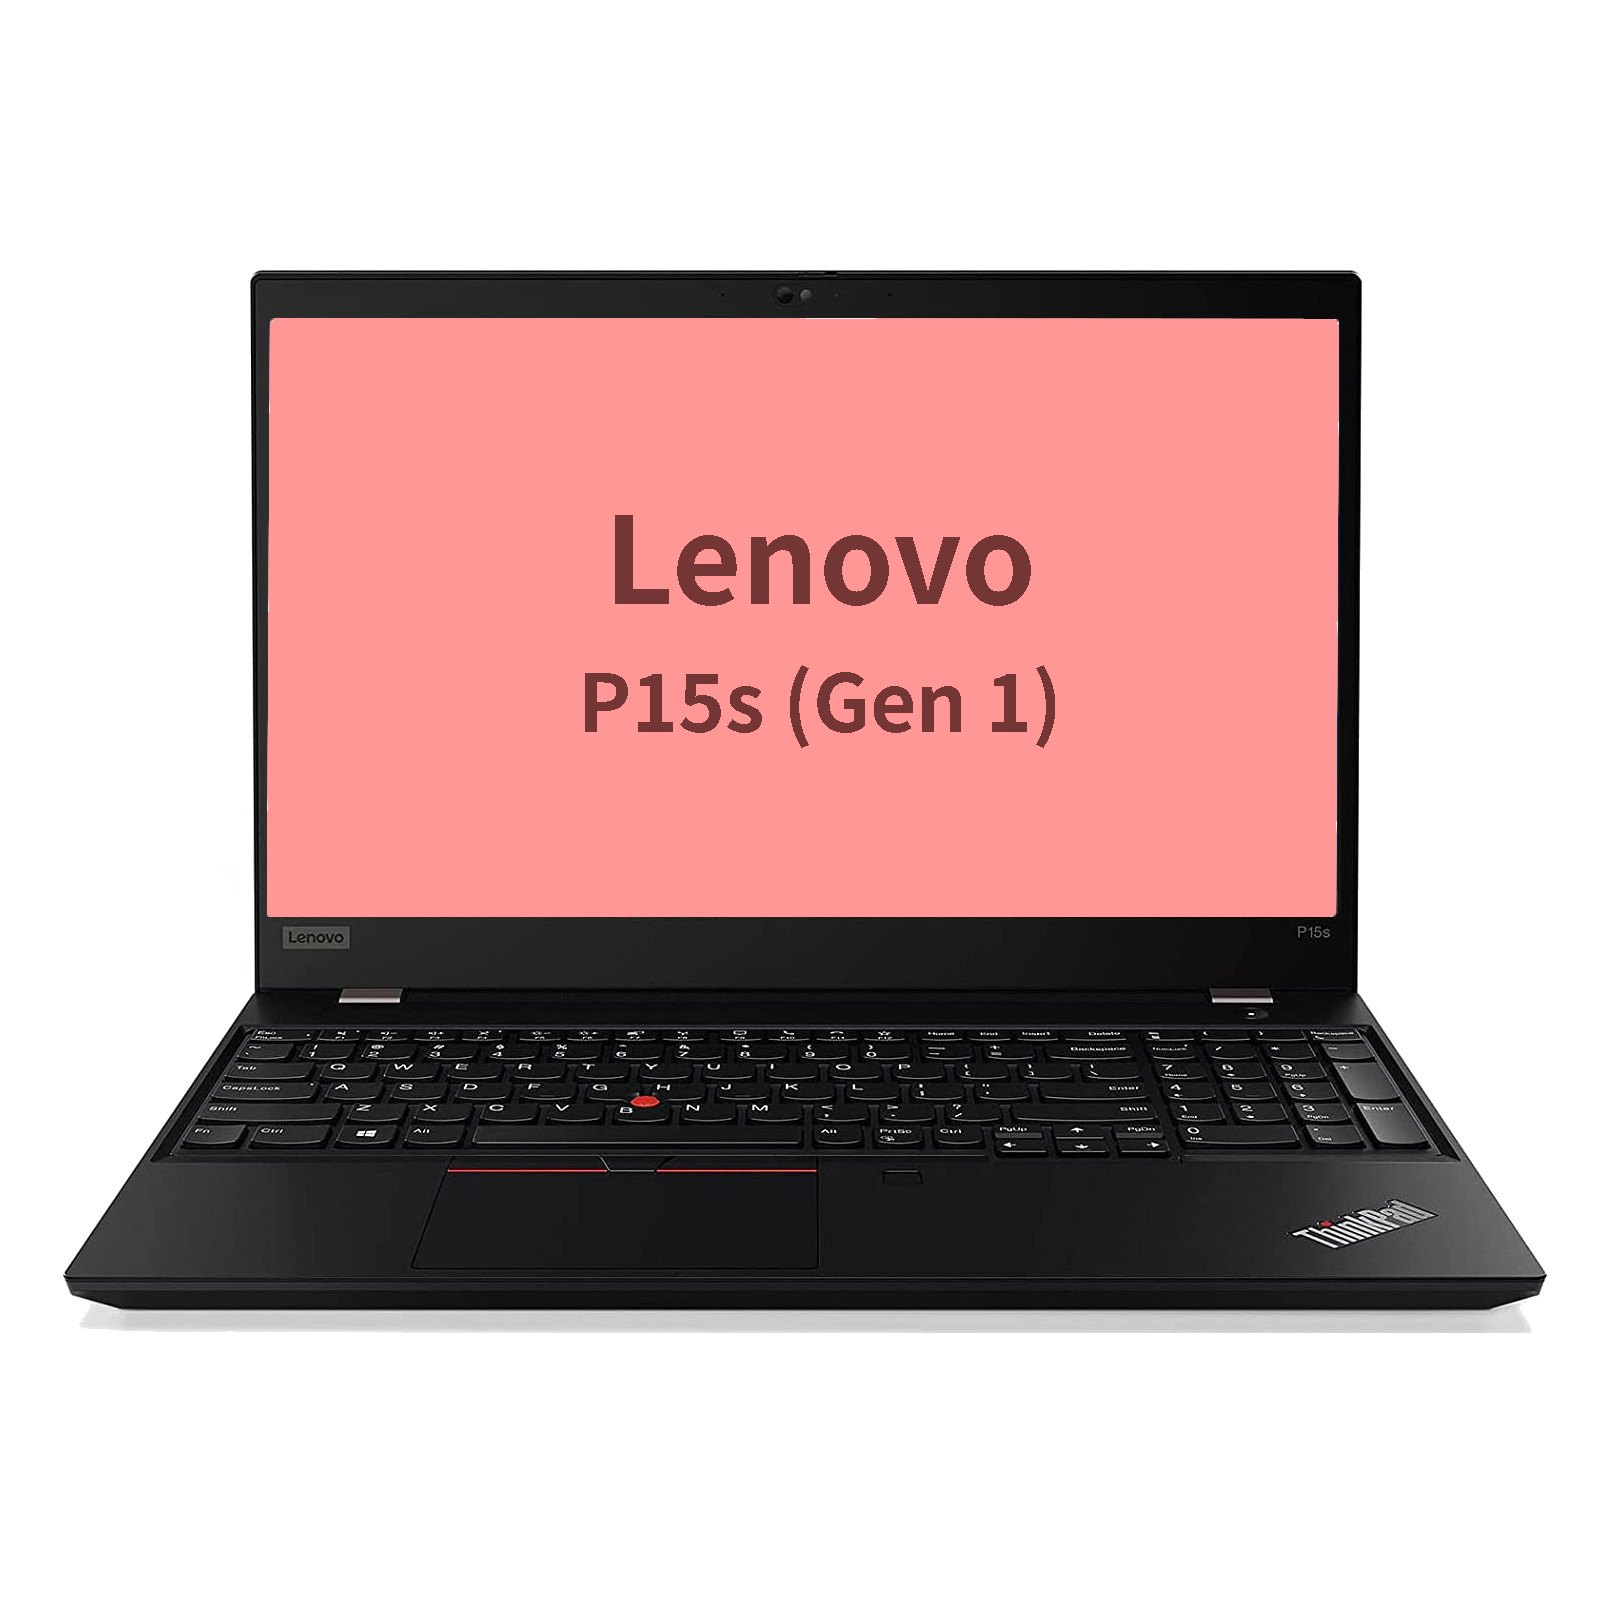 Lenovo P15s (Gen 1)